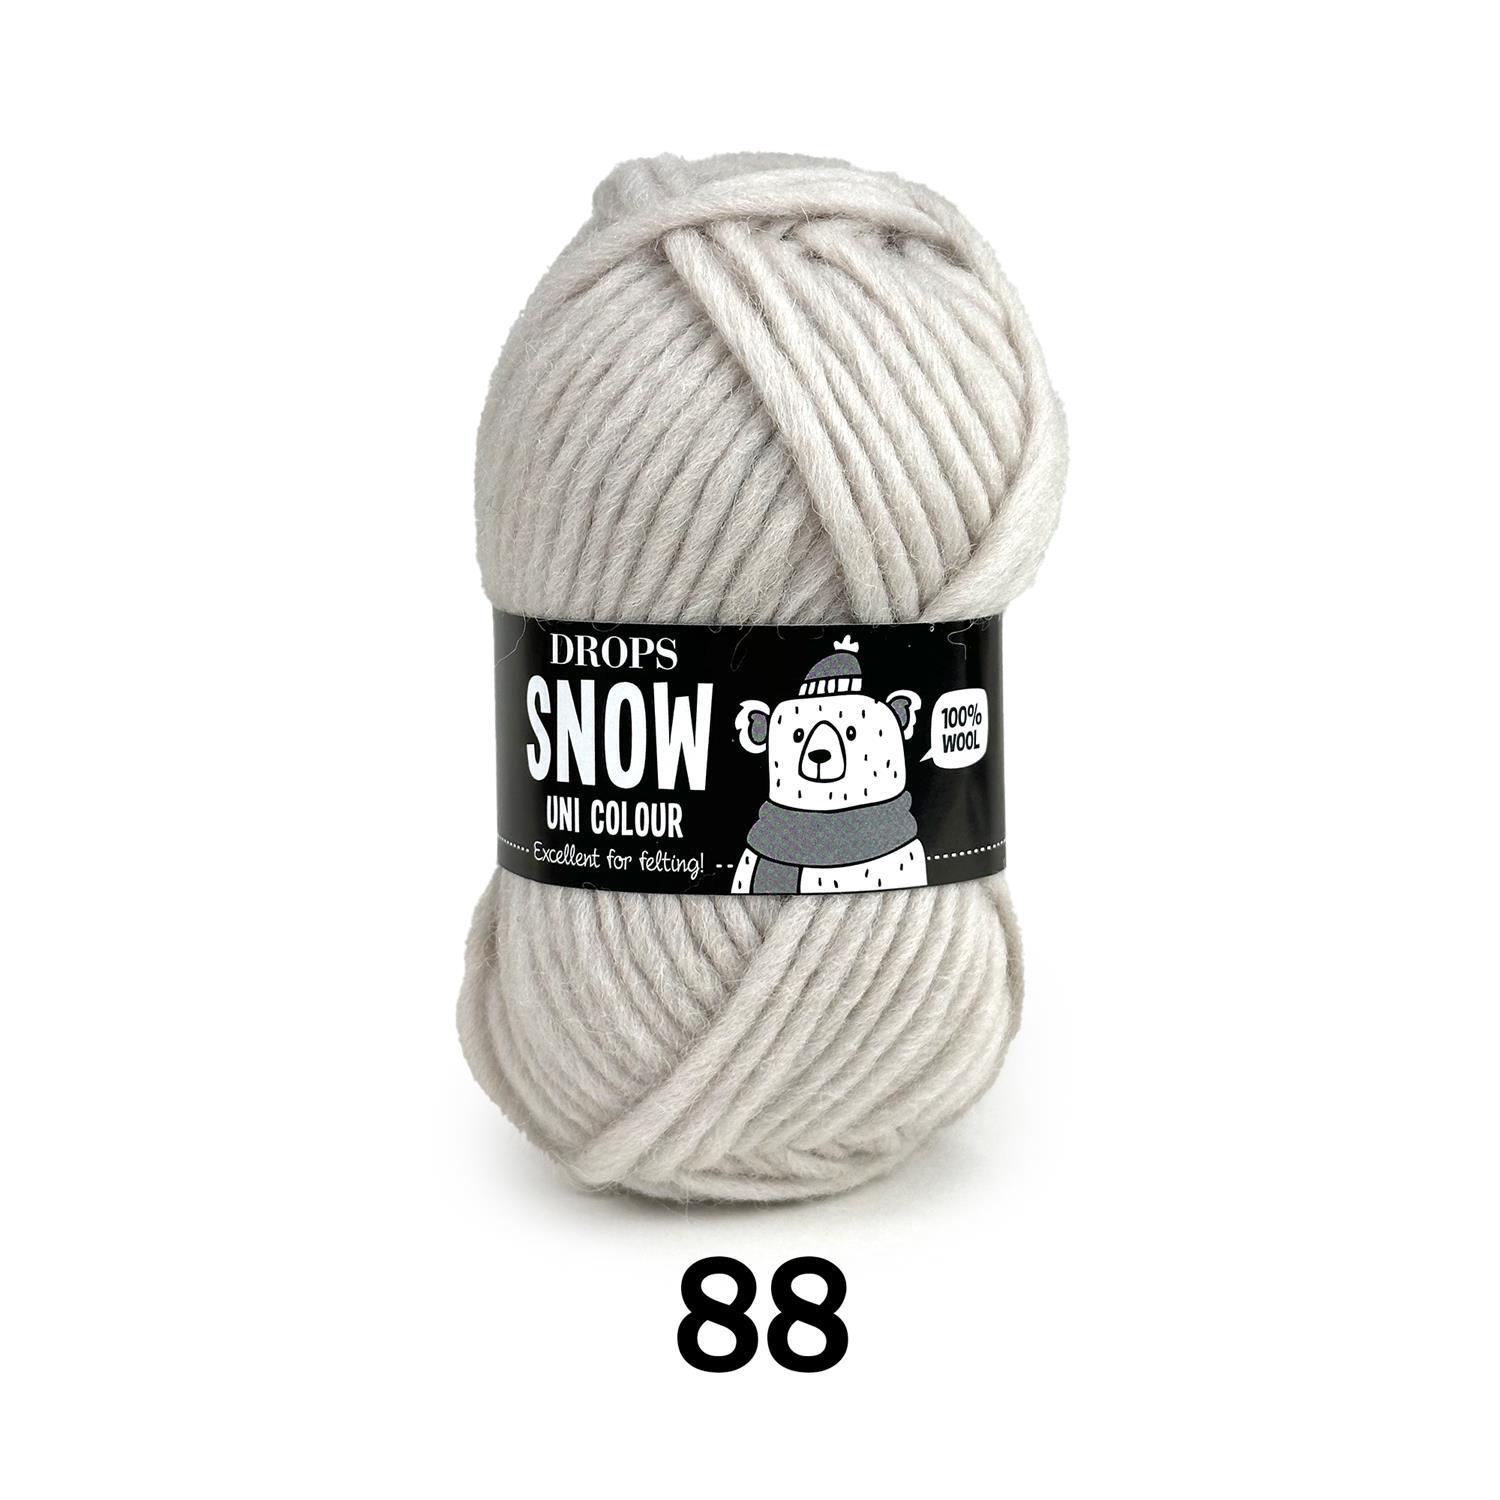 DROPS Snow Uni Colour 88 kreide